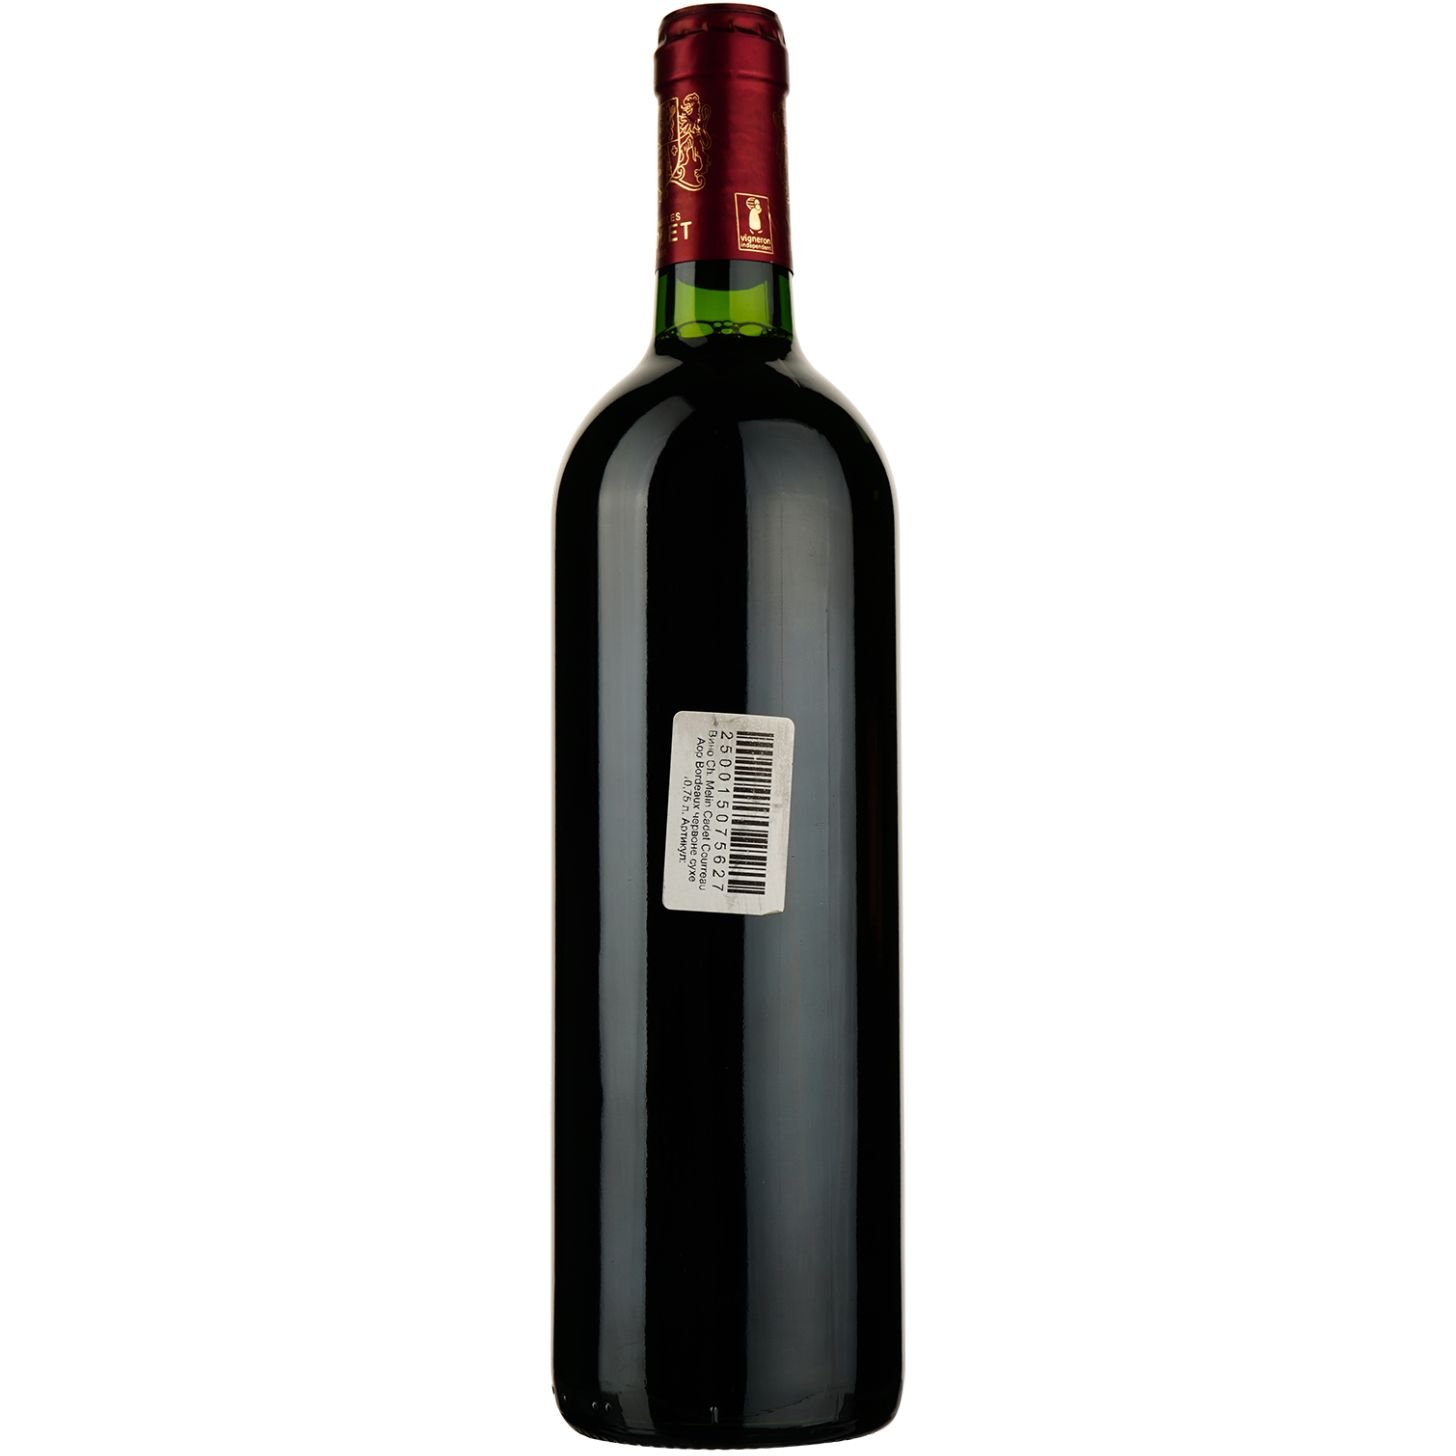 Вино Chаteau Melin Cadet Courreau AOP Bordeaux 2018, красное, сухое, 0,75 л - фото 2